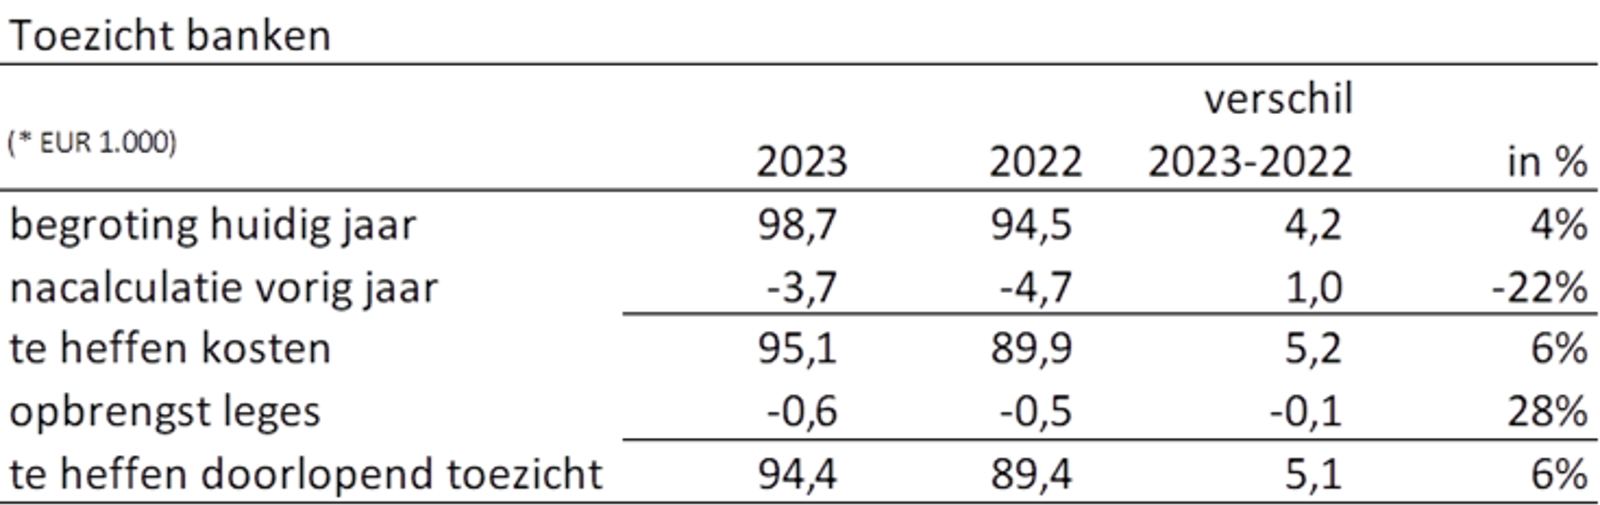 Tabel waarin het verschil weergeven wordt tussen 2022 en 2023 op gebied van gestegen begroting en een minder gunstig exploitatieresultaat van banken.